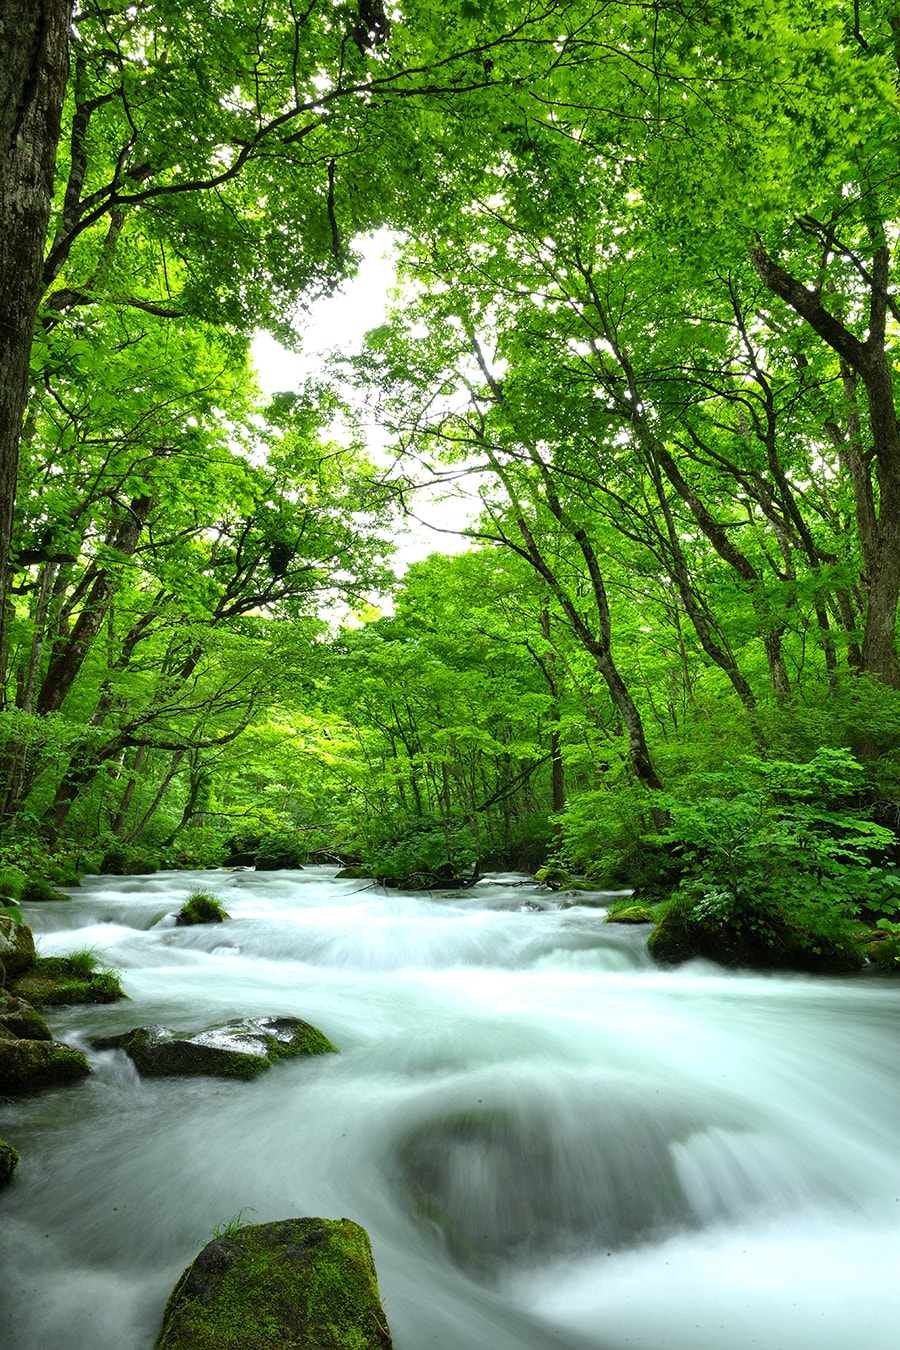 奥入瀬渓流●十和田湖畔から約14 ㎞にわたって美しい自然の景観が広がる奥入瀬渓流。夏には瑞々しい緑に覆われ、8月の平均最高気温は約25 ℃。さらに清流の音が心地よく涼を誘います。また、例年10月中旬からの紅葉も素晴らしい。